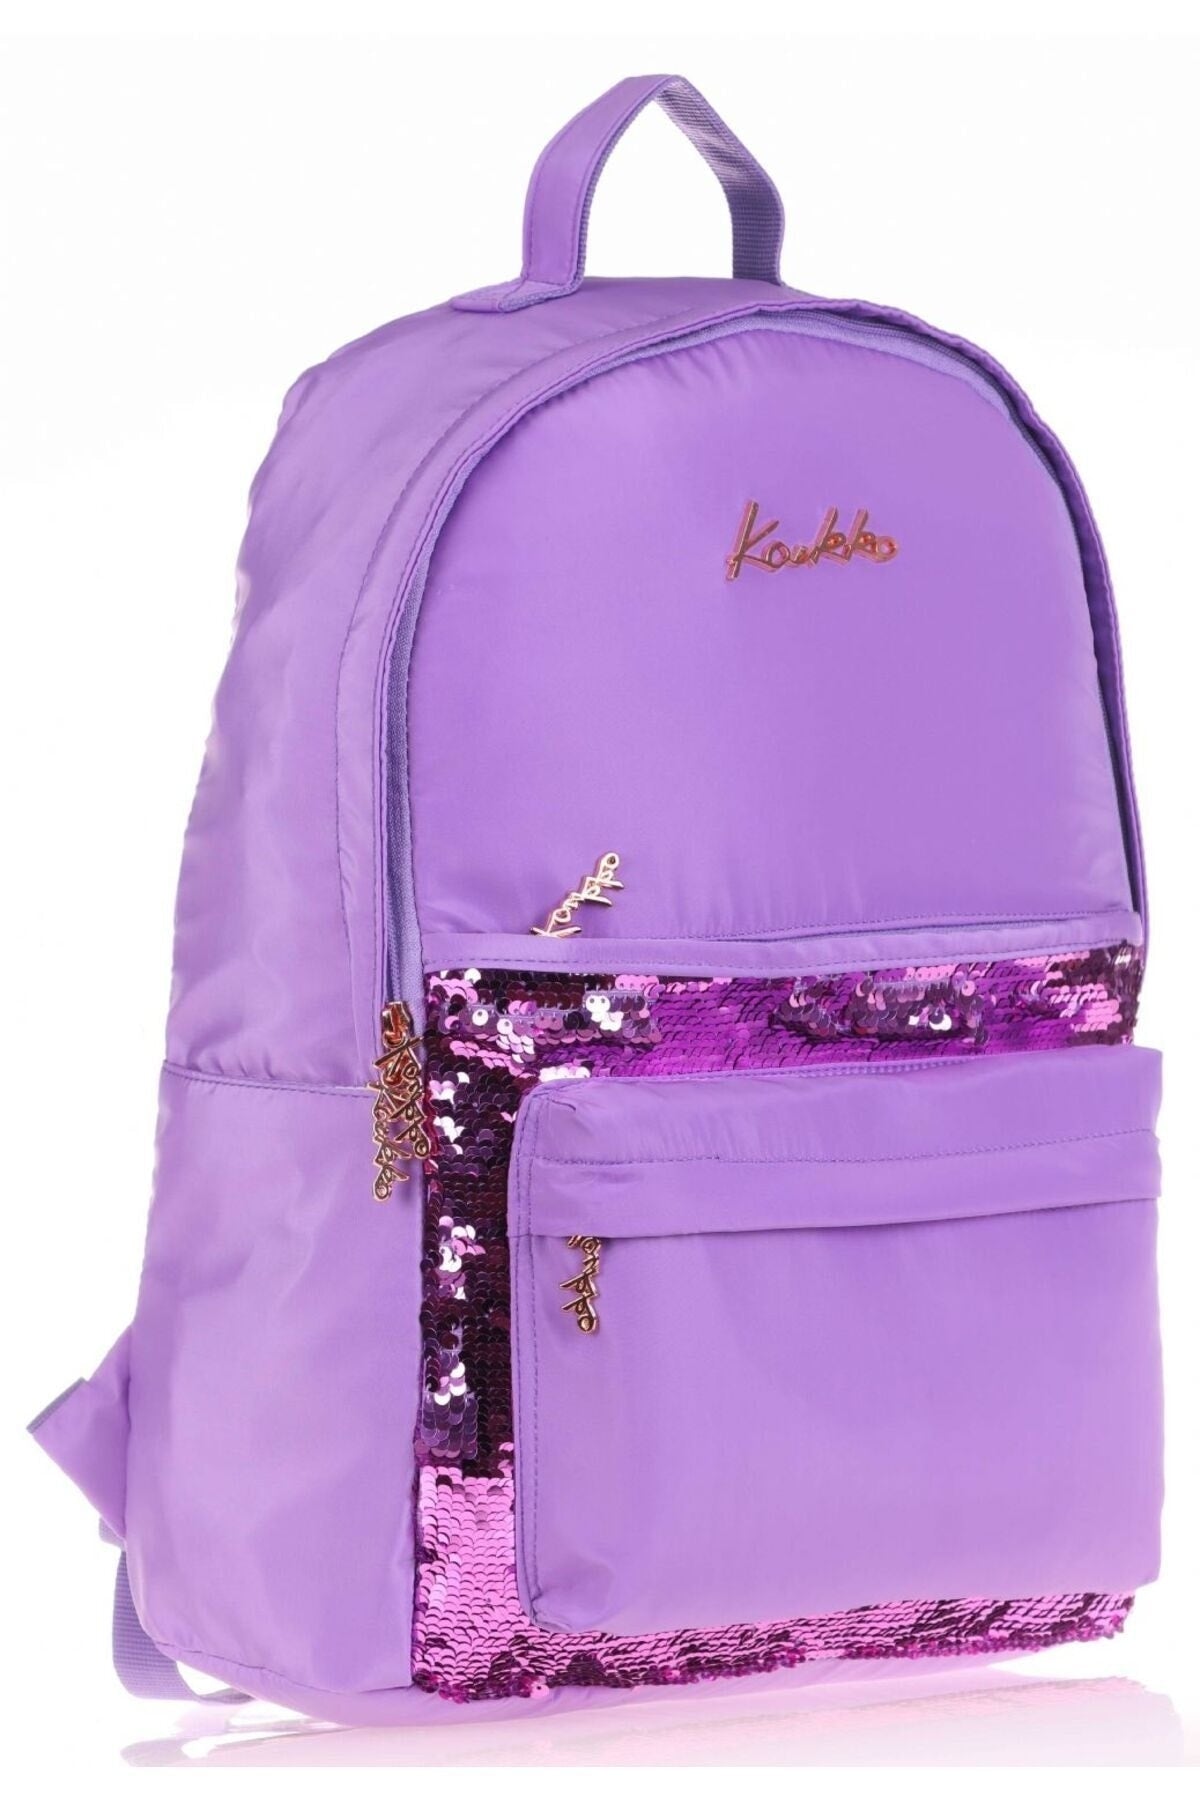 Llia Sequin School Bag and Pencil Holder Set - Girls